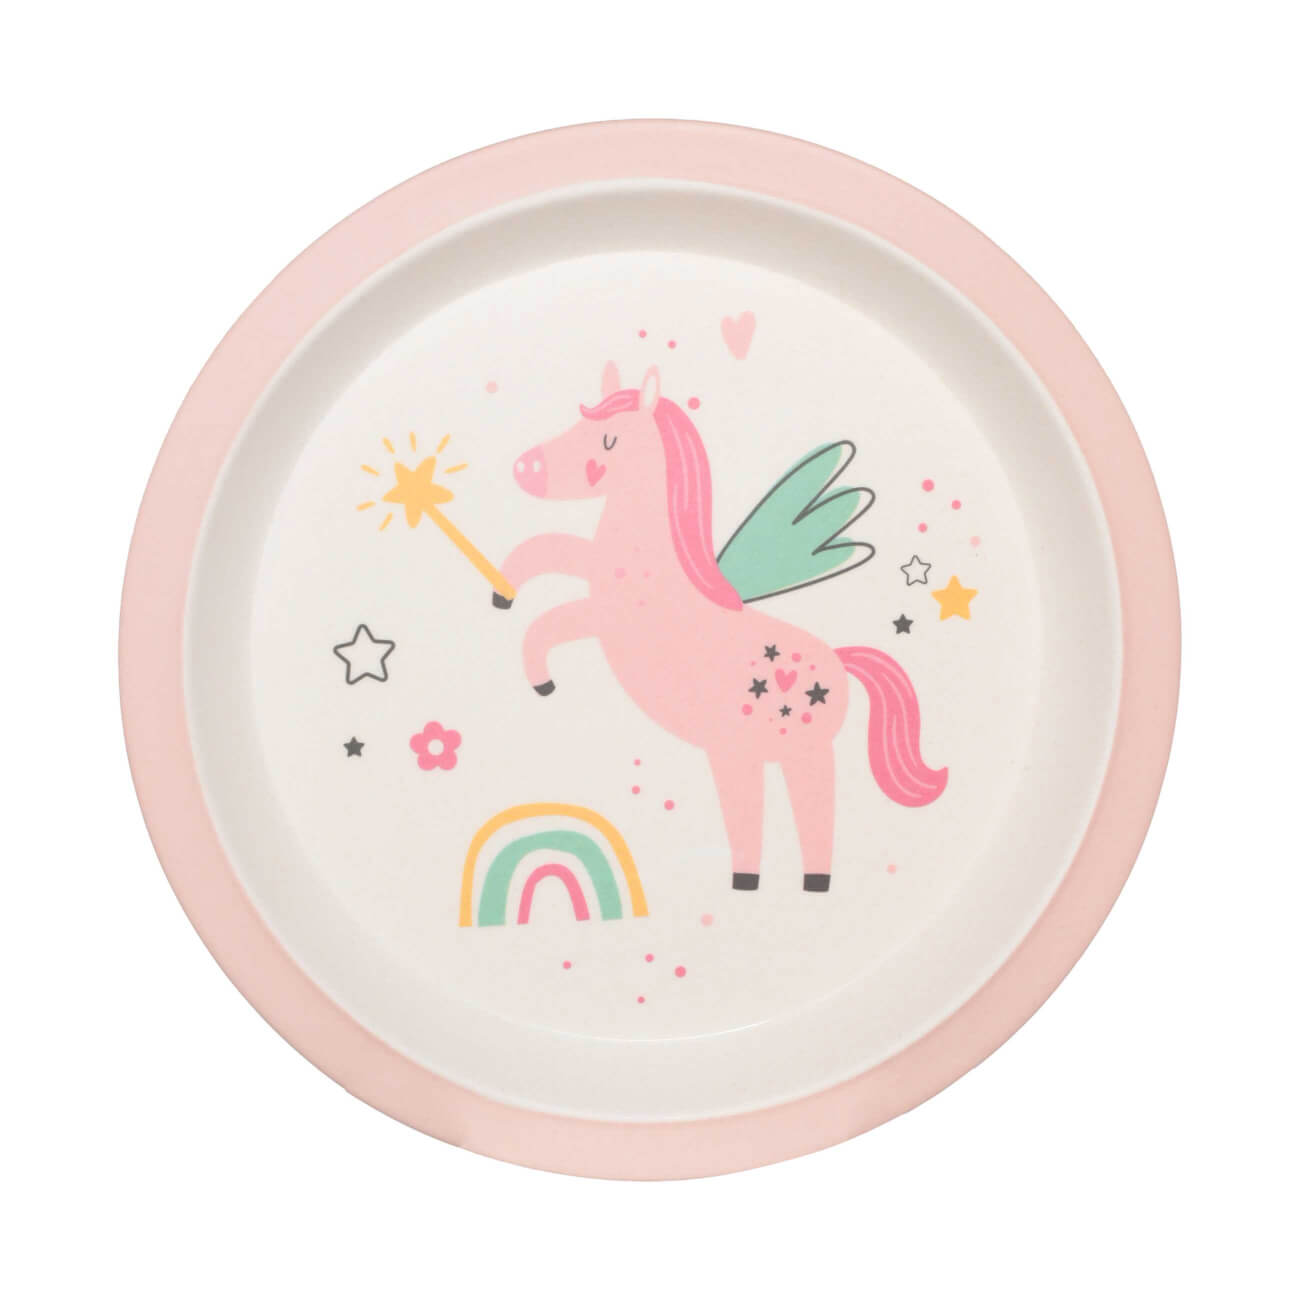 Тарелка закусочная, детская, 21 см, бамбук, розовая, Единорог и радуга, Unicorn тарелка детская из бамбука трехсекционная